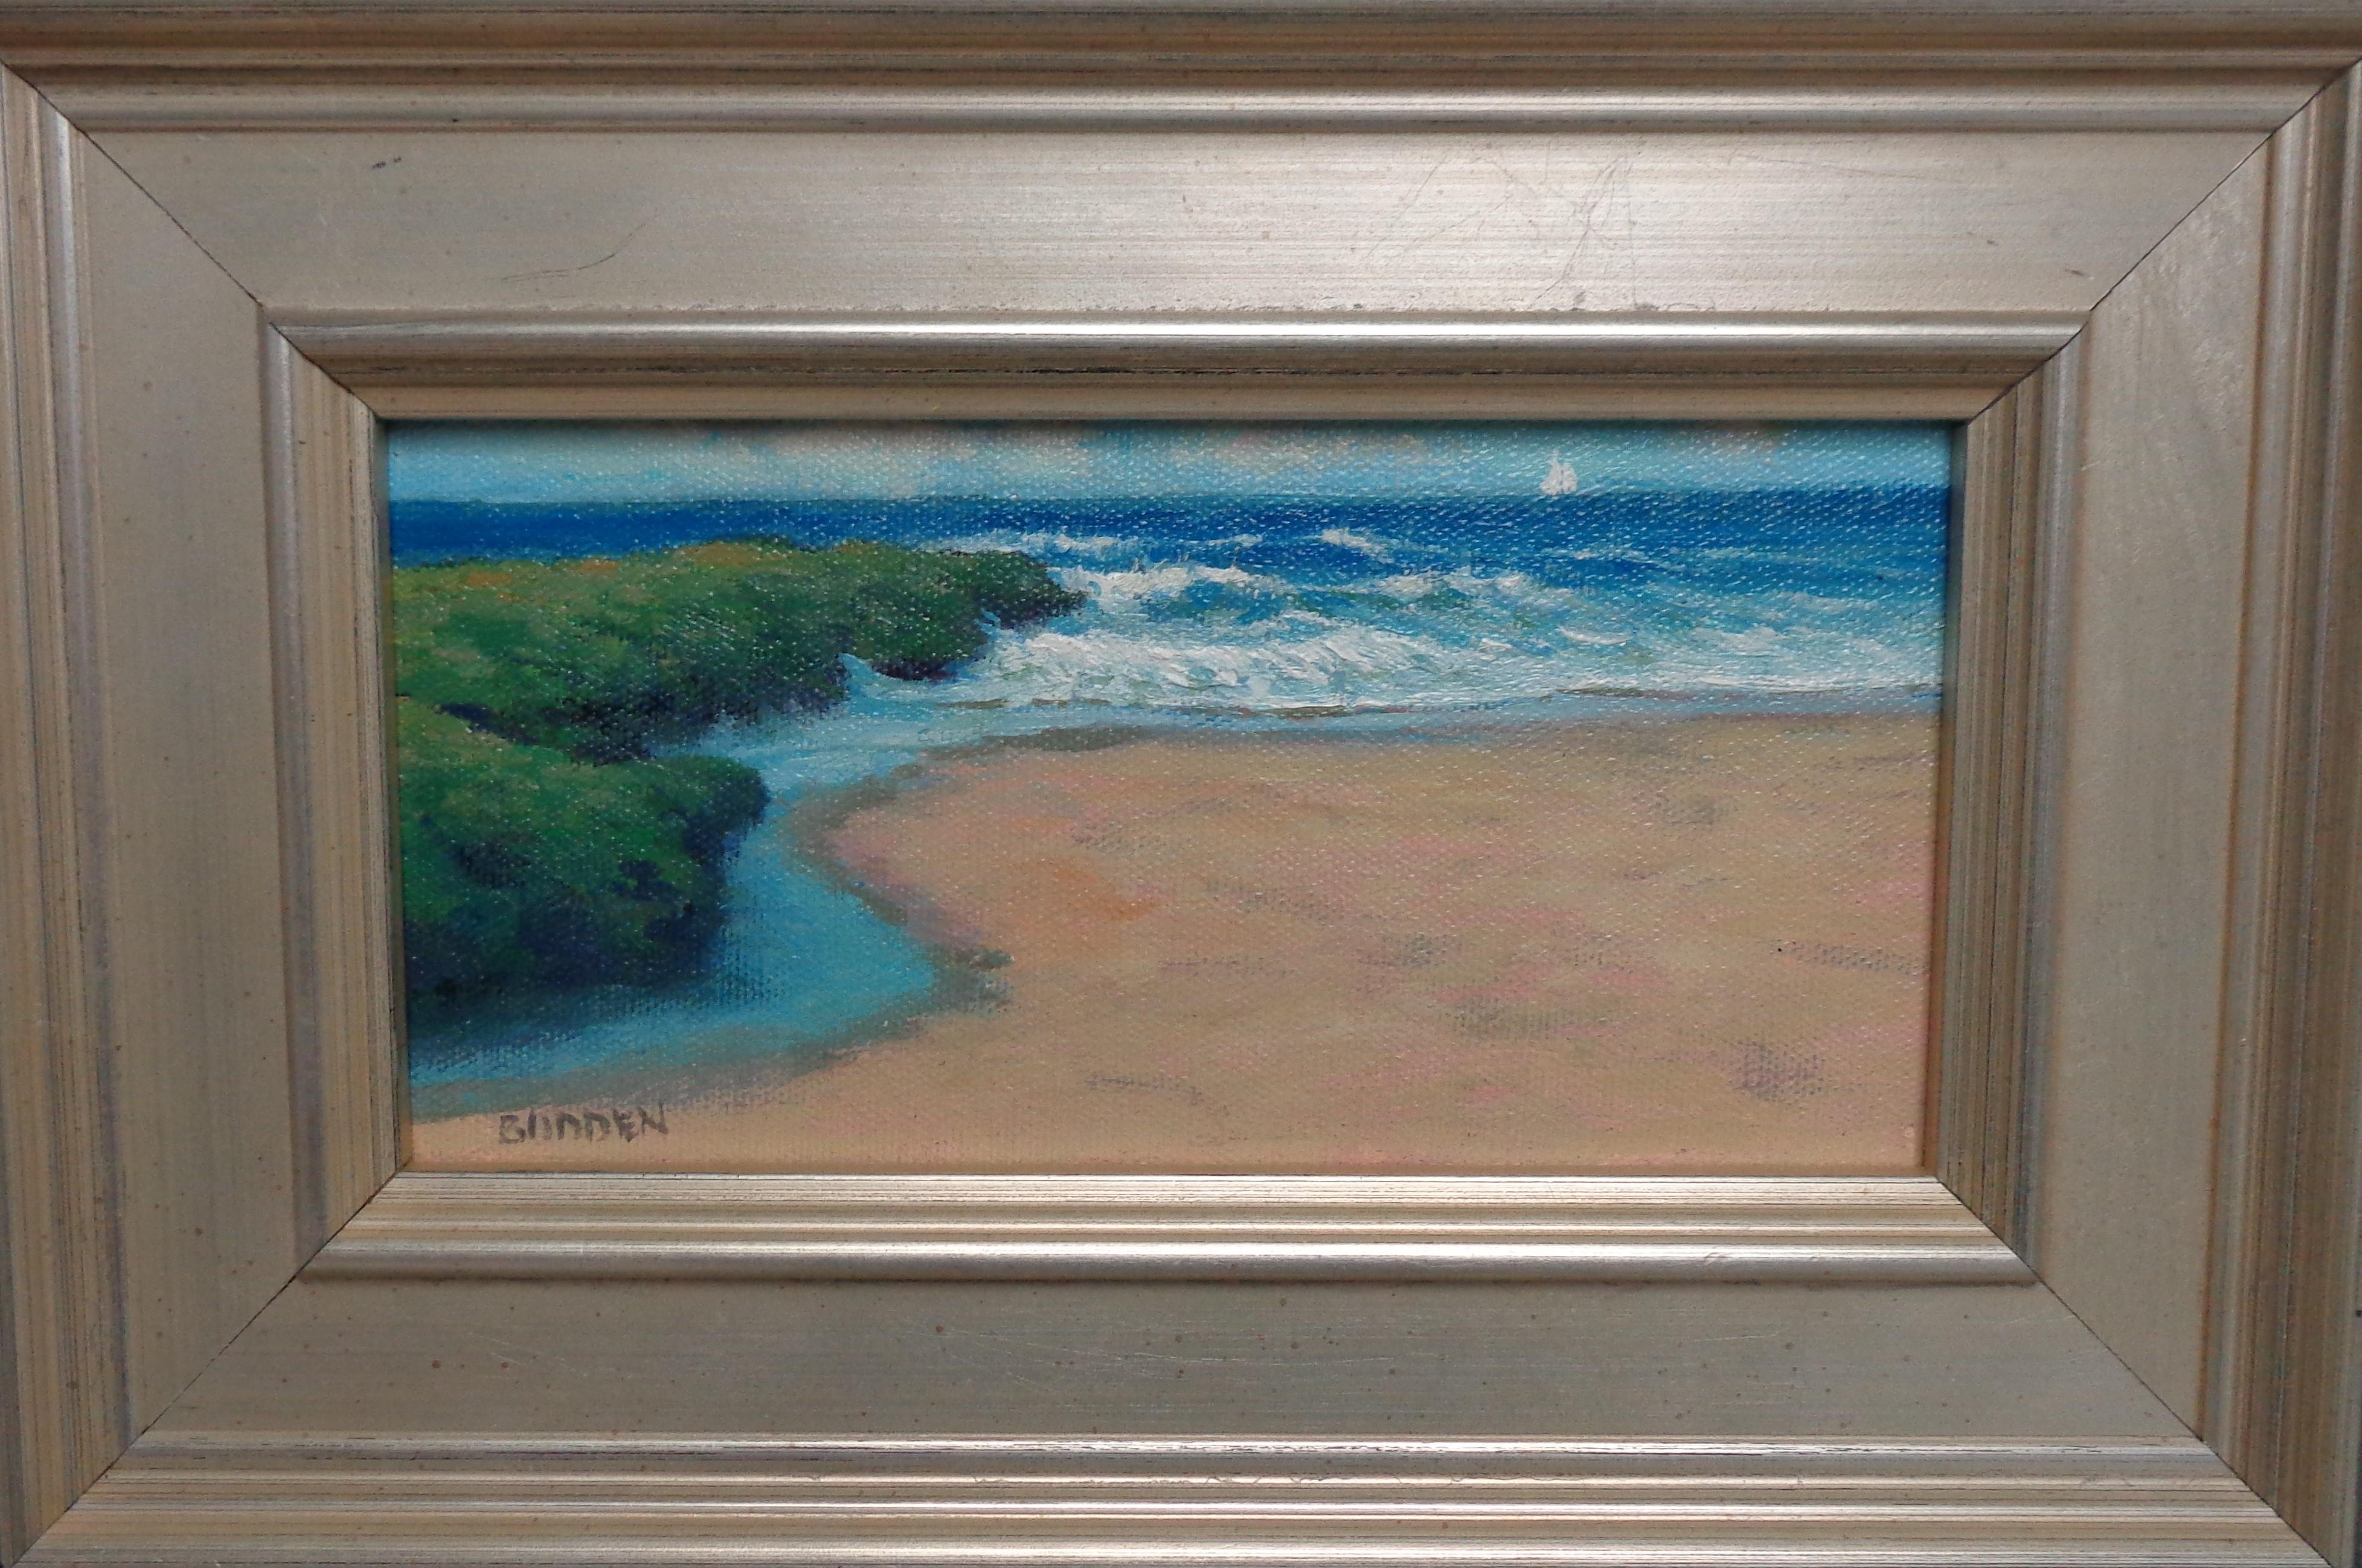 Off the Coast Seascape Study ist ein Ölgemälde auf Leinwand des preisgekrönten zeitgenössischen Künstlers Michael Budden, das eine schöne Strandszene im Stil des impressionistischen Realismus zeigt. Das Bild misst ungerahmt 4 x 7,88 und gerahmt 7,63